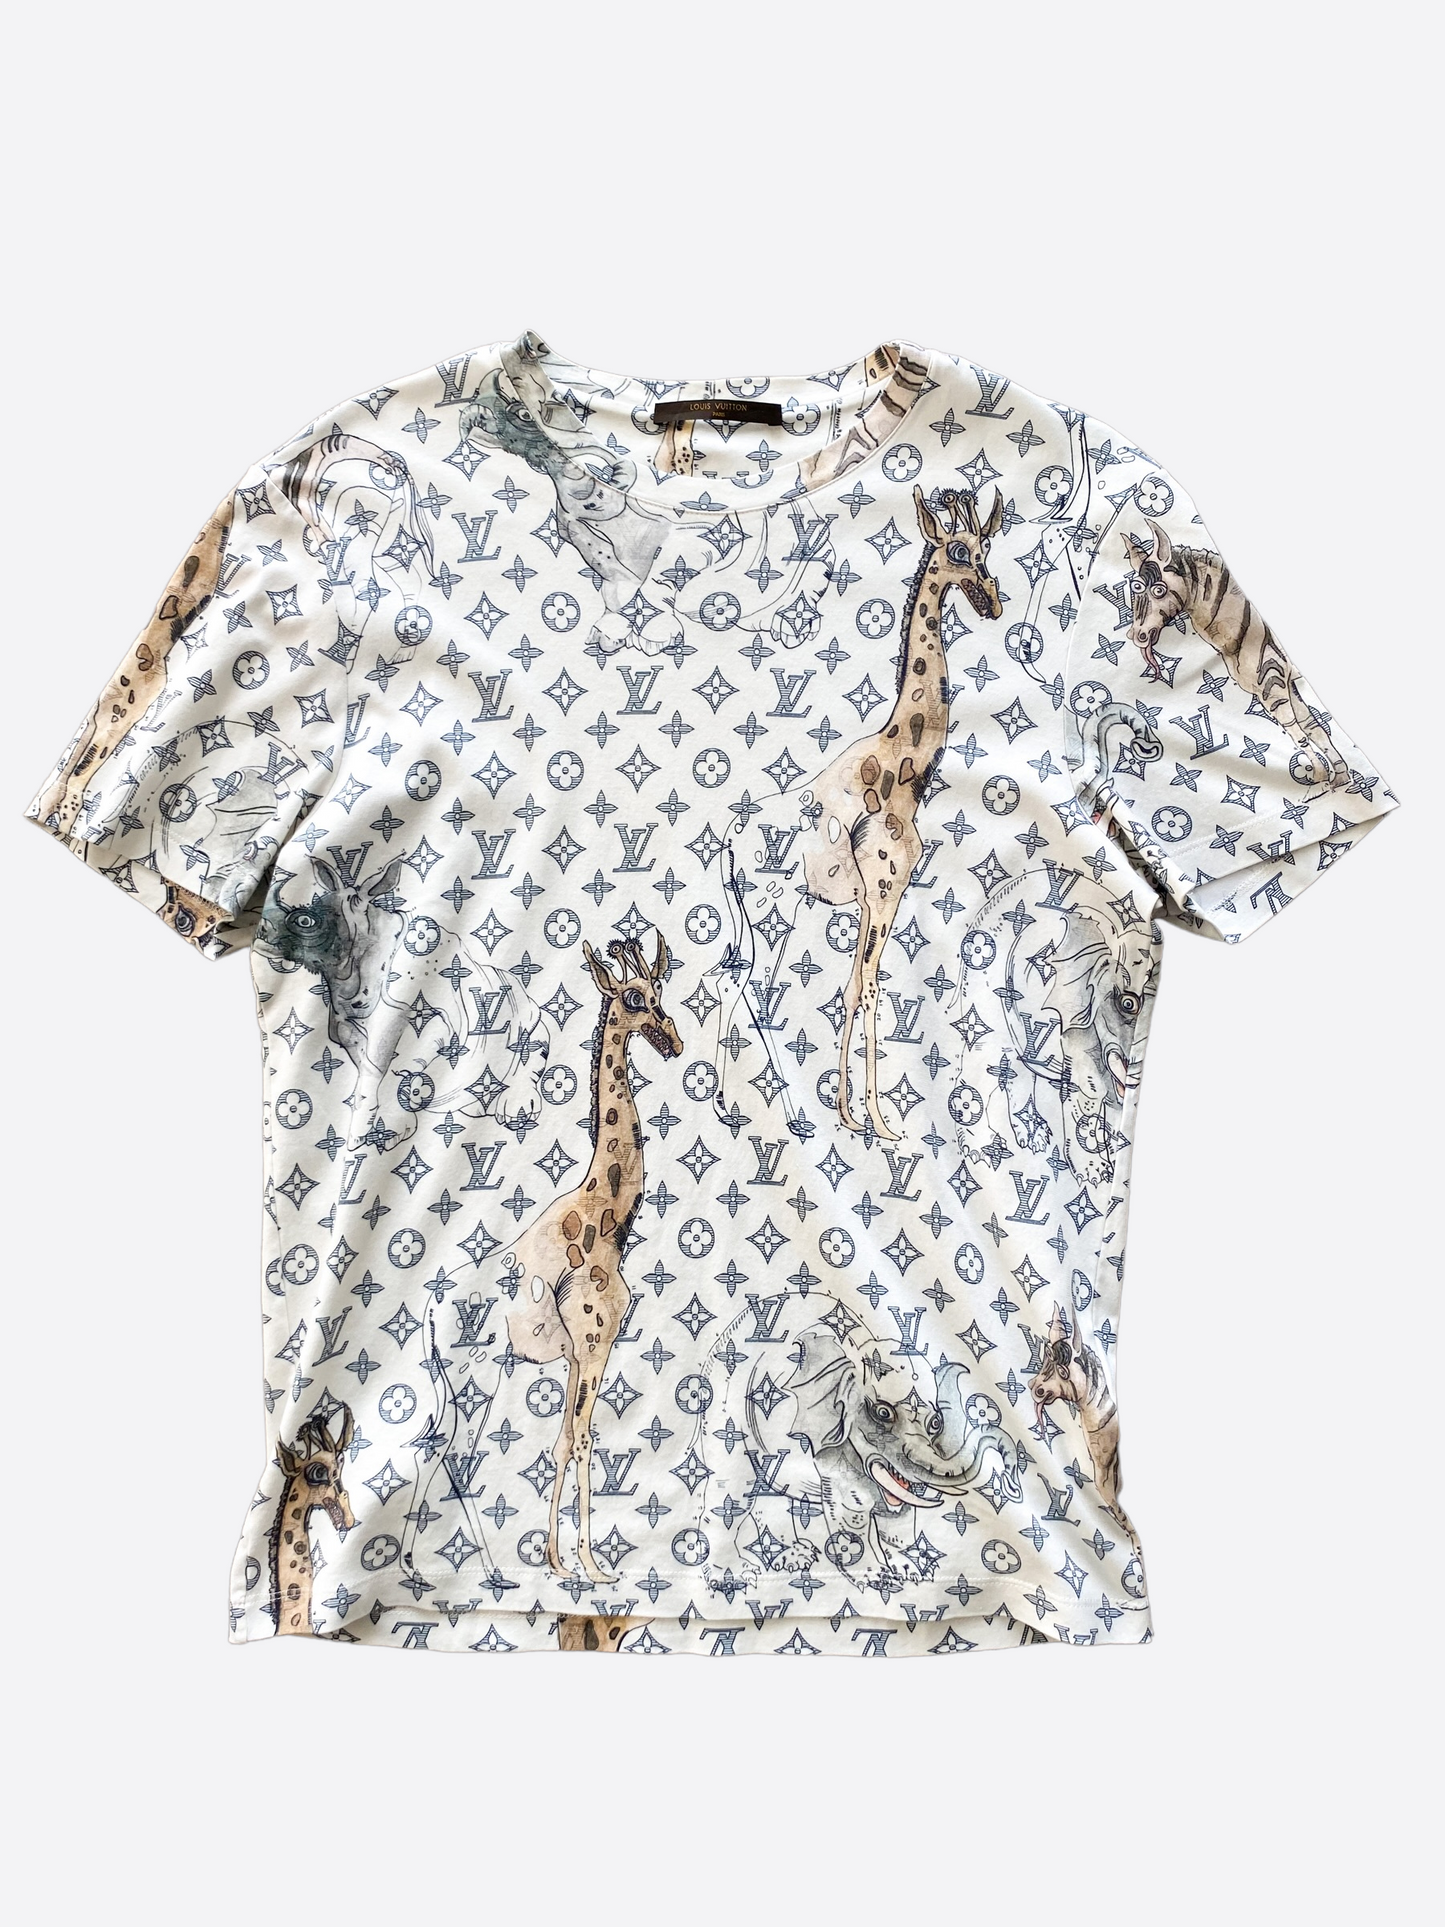 Louis Vuitton, Shirts, New Authentic Louis Vuitton Chapman Giraffe Tshirt